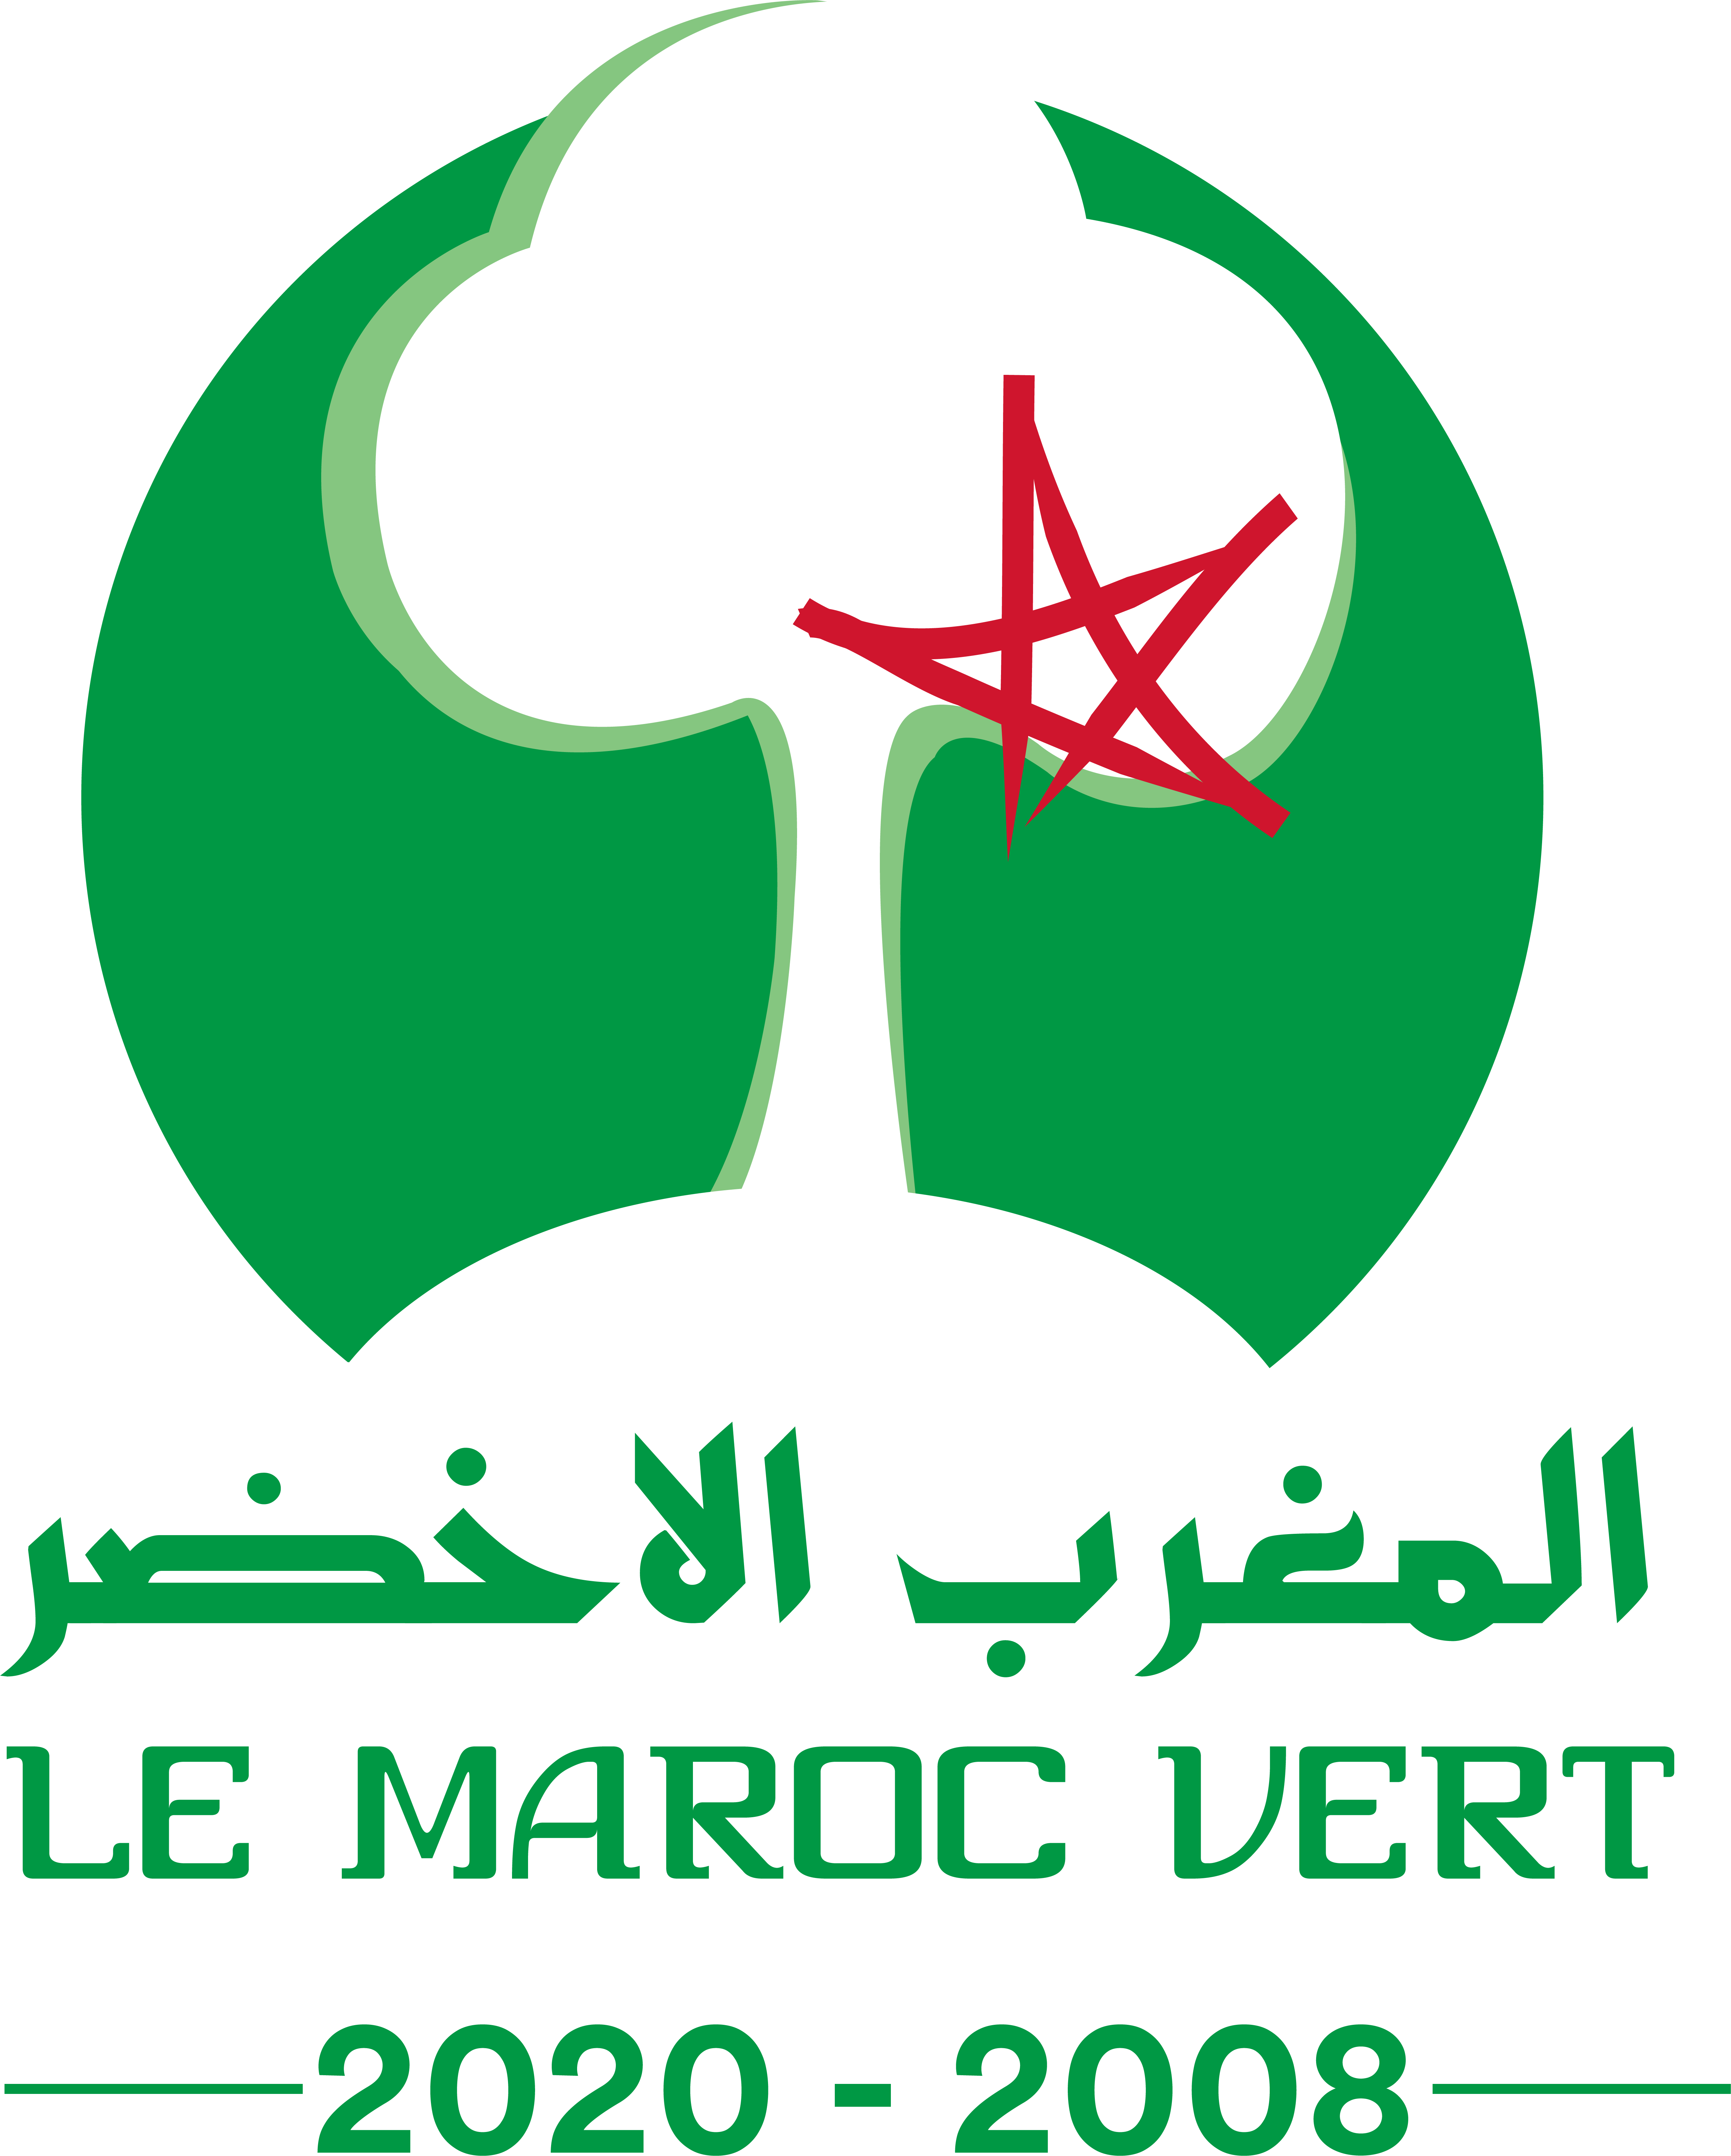 المغرب الأخضر